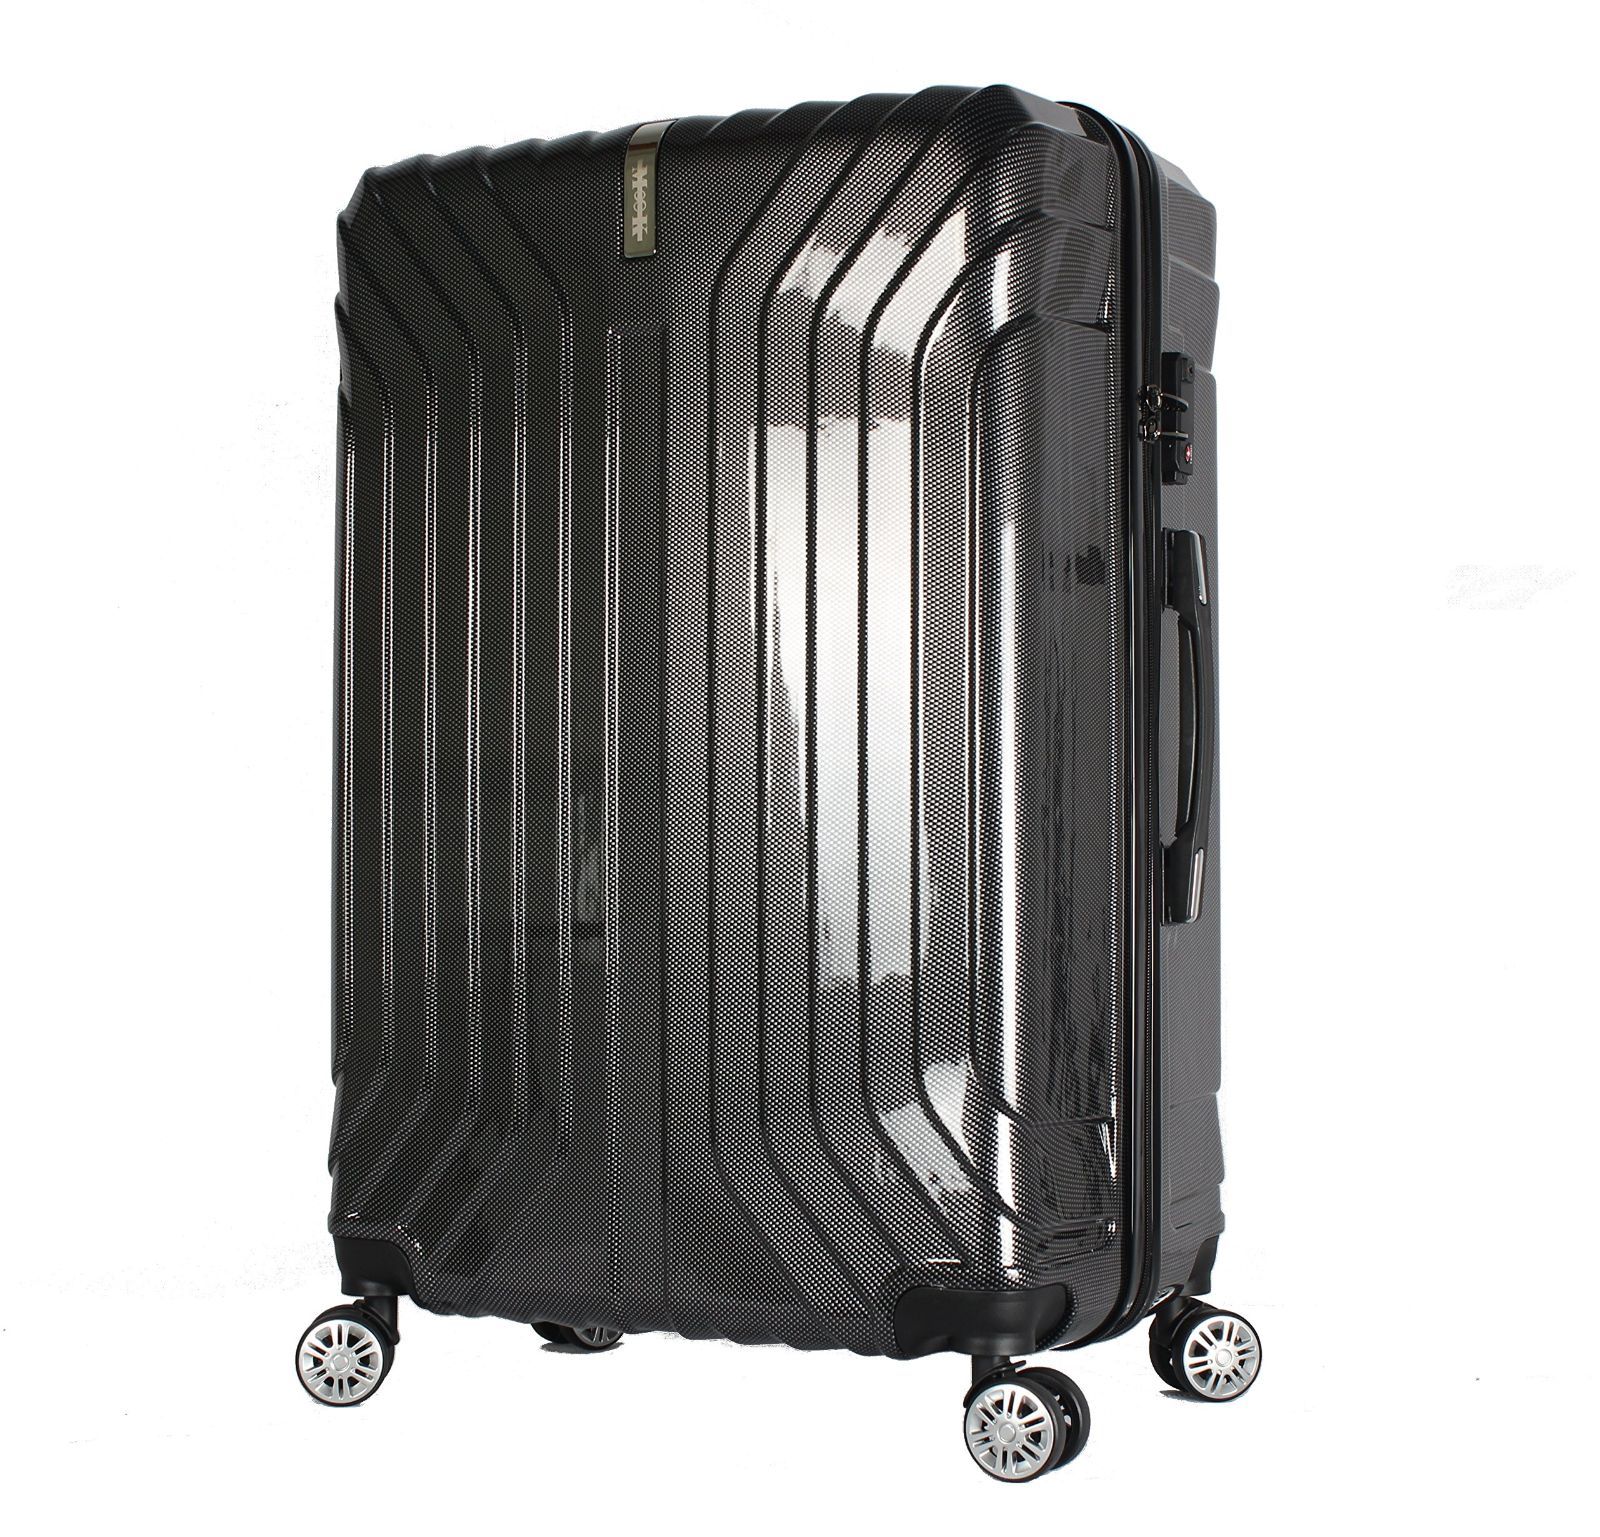 限定品 M∞K ムーク スーツケース 超軽量 TSAロック 一年 ABS+PC素材 9816.22円 その他 